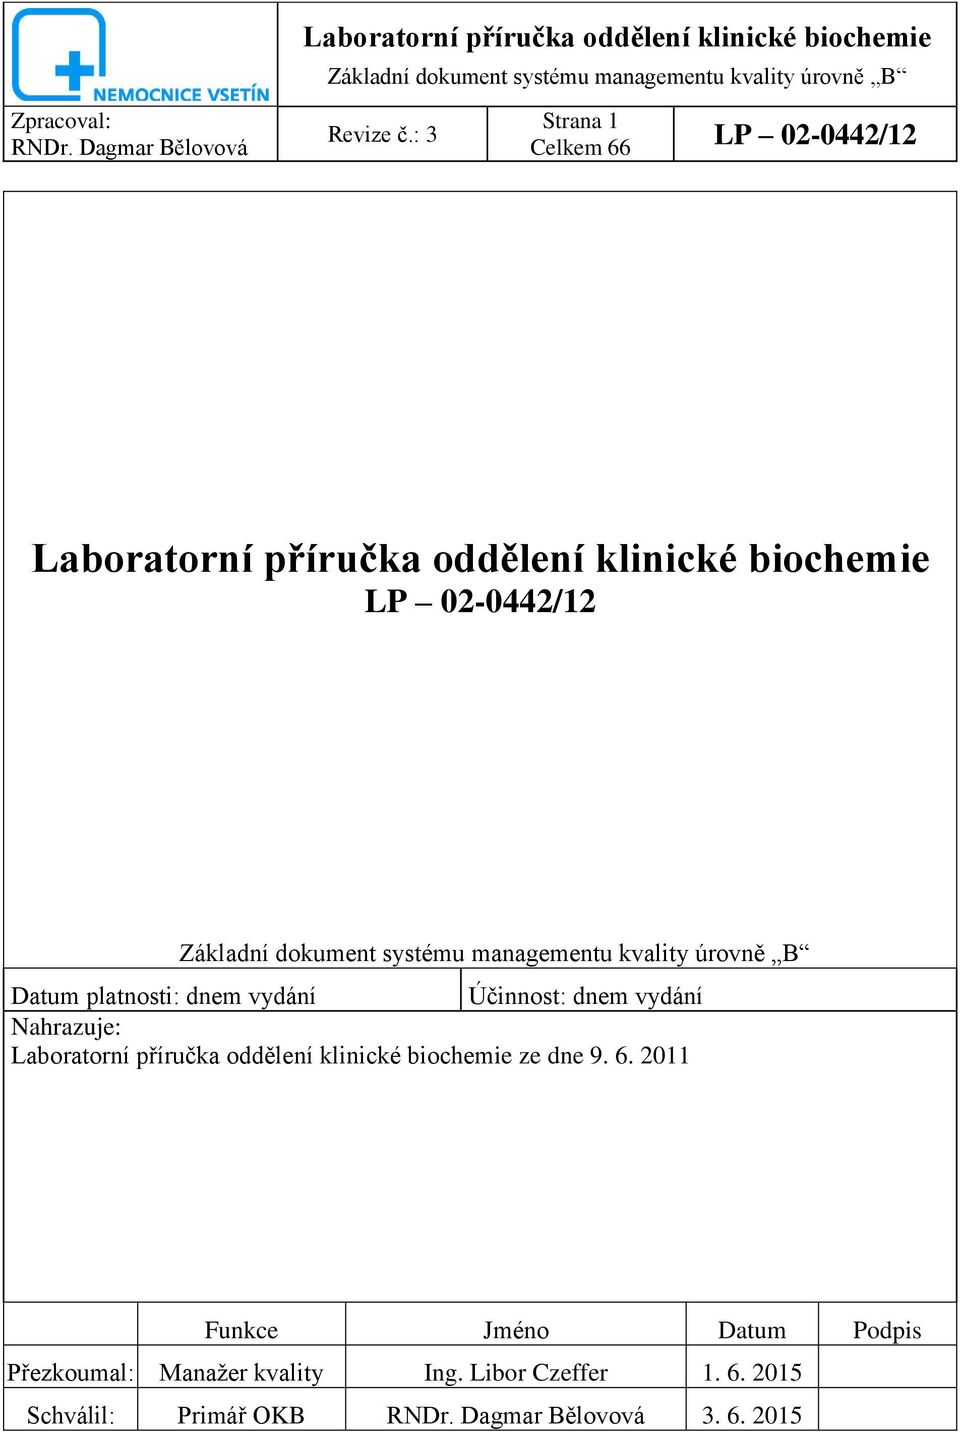 Laboratorní příručka oddělení klinické biochemie ze dne 9. 6.